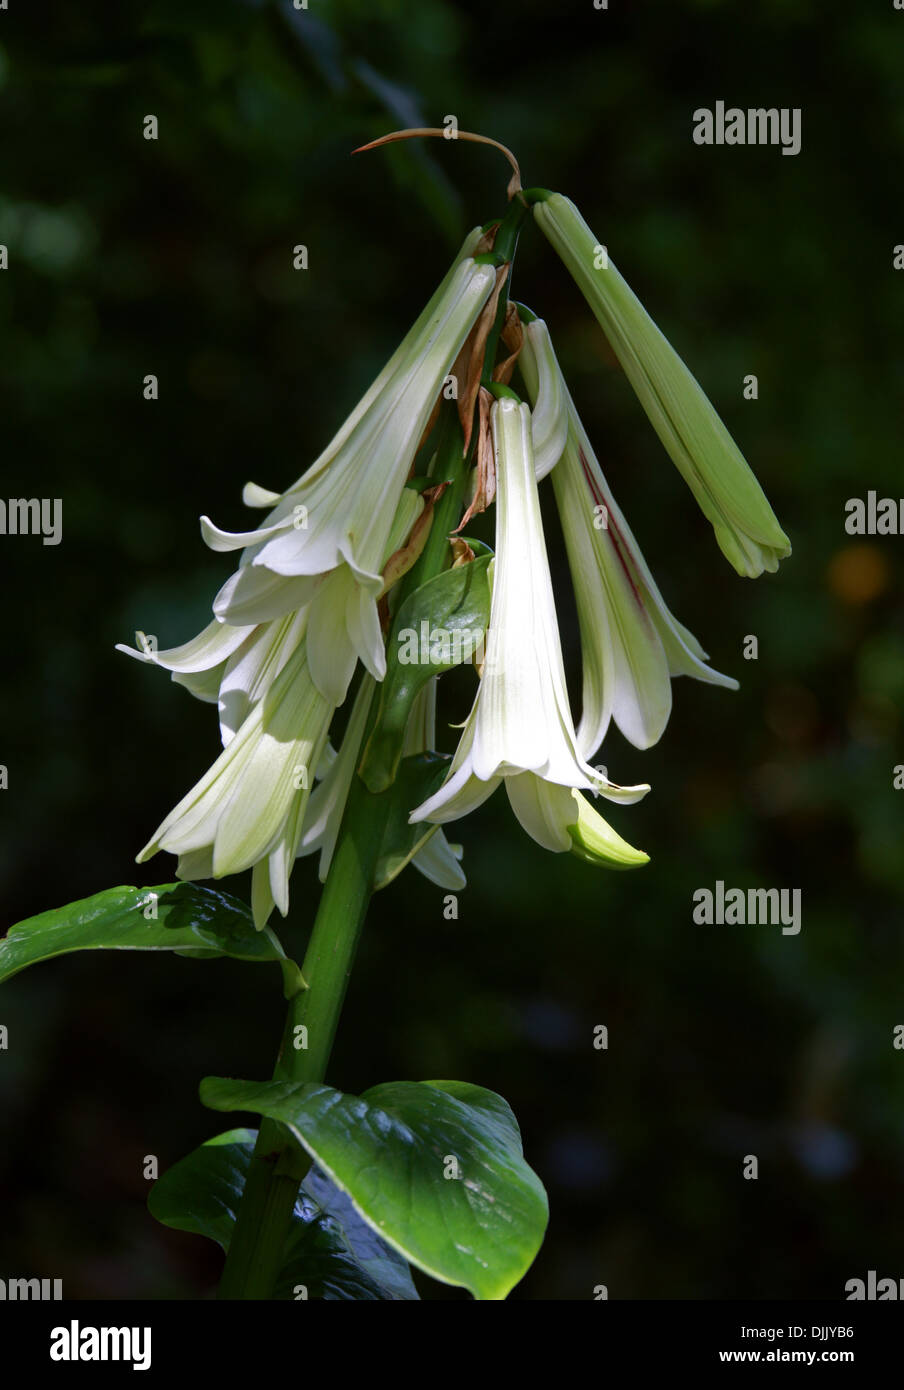 Giant Himalayan Lily, Cardiocrinum giganteum, Liliaceae. Les clairières dans l'Himalaya, au Japon et en Chine. Banque D'Images